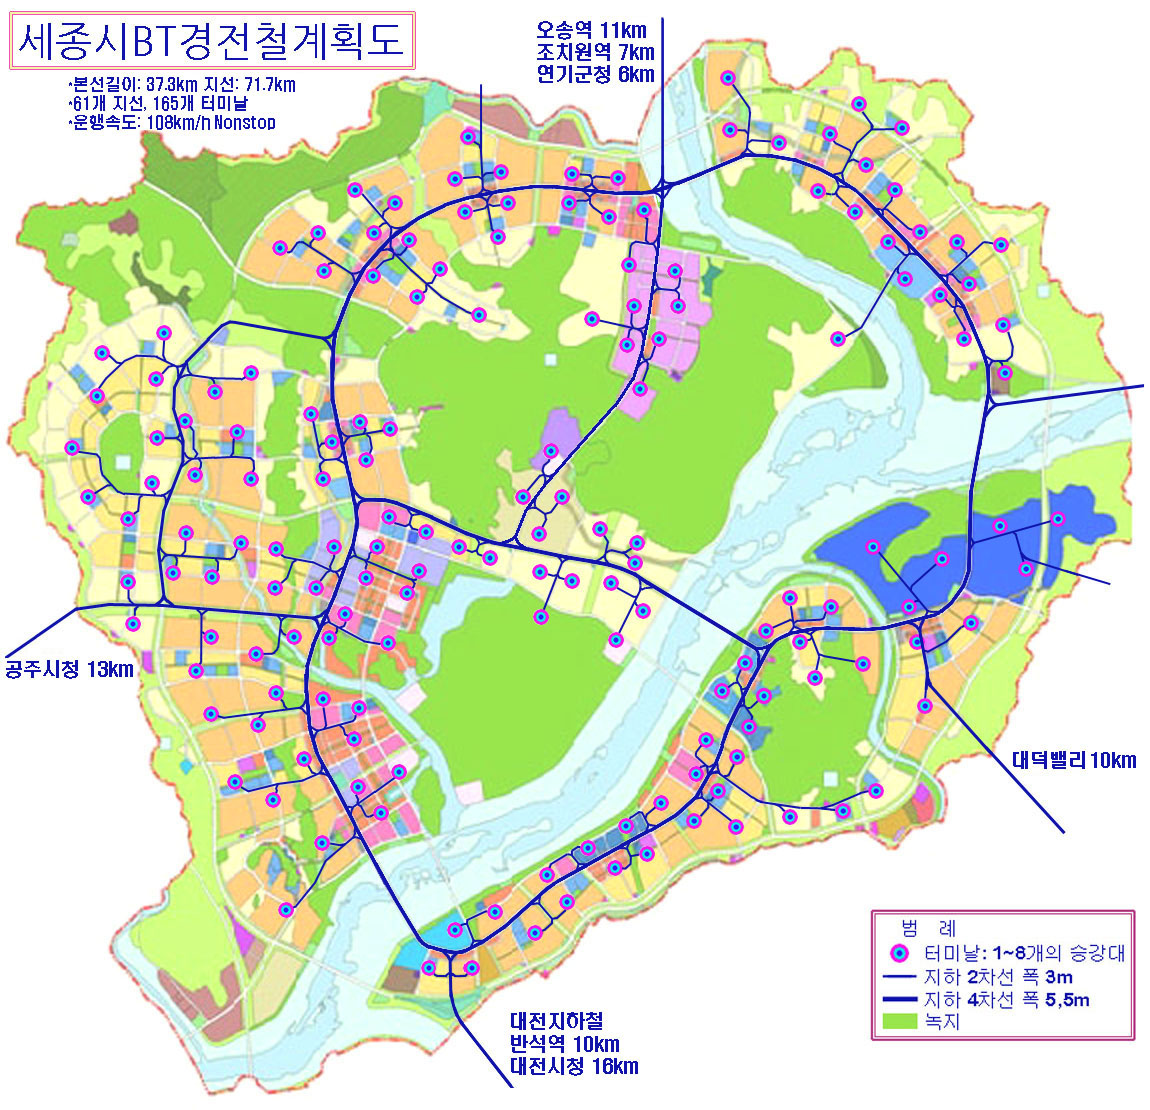 Sejong City